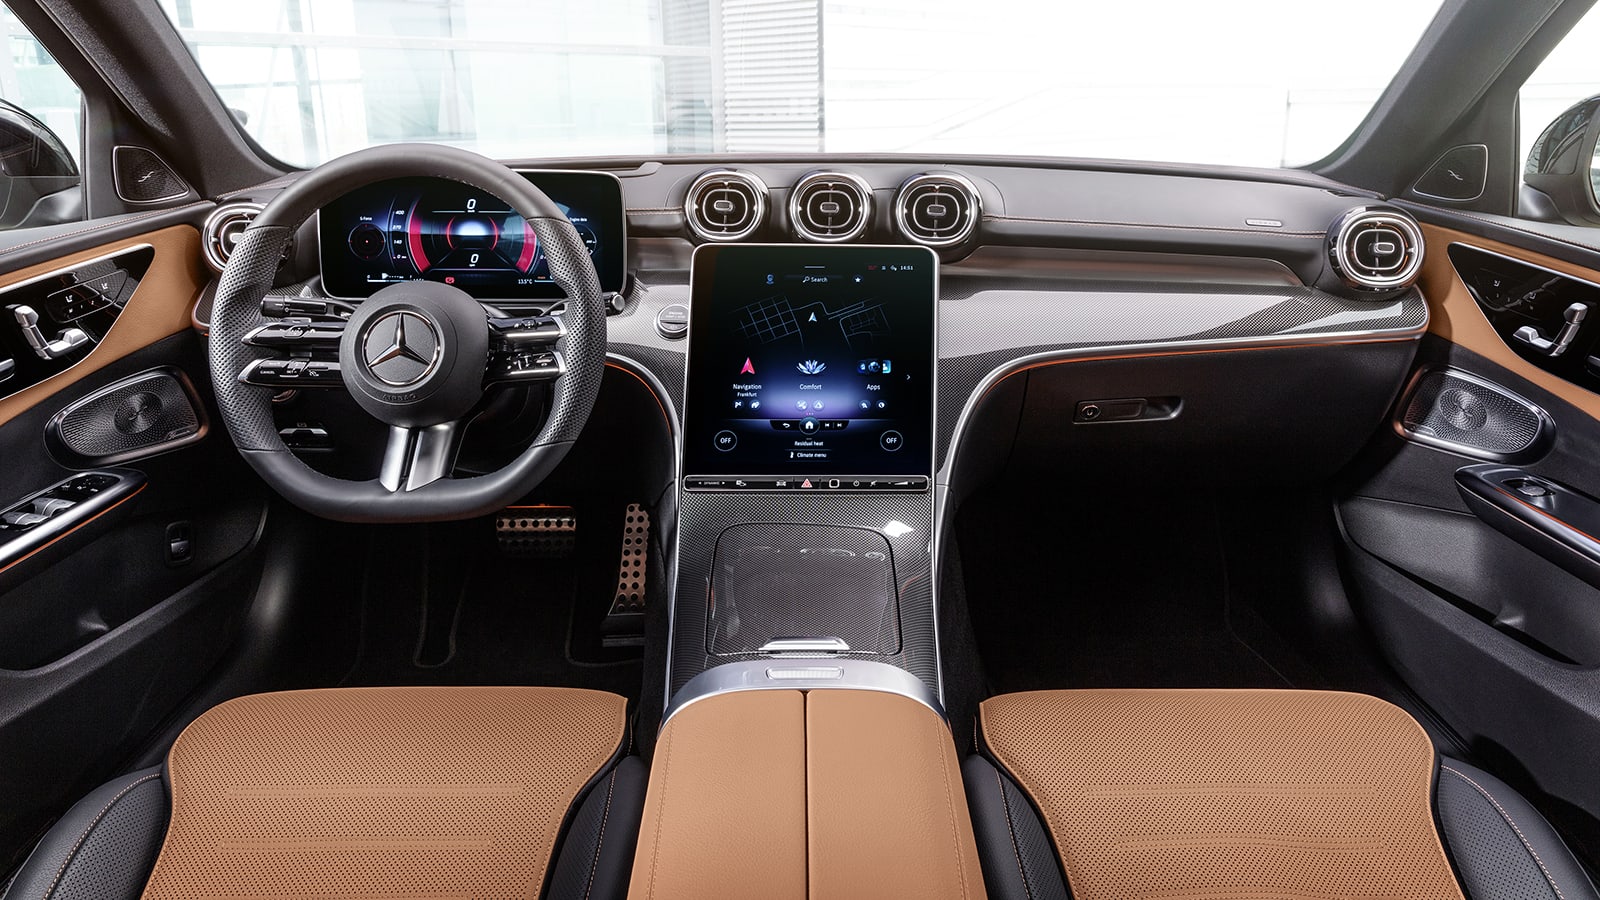 When will Tesla update Model 3 interior? | Tesla Motors Club